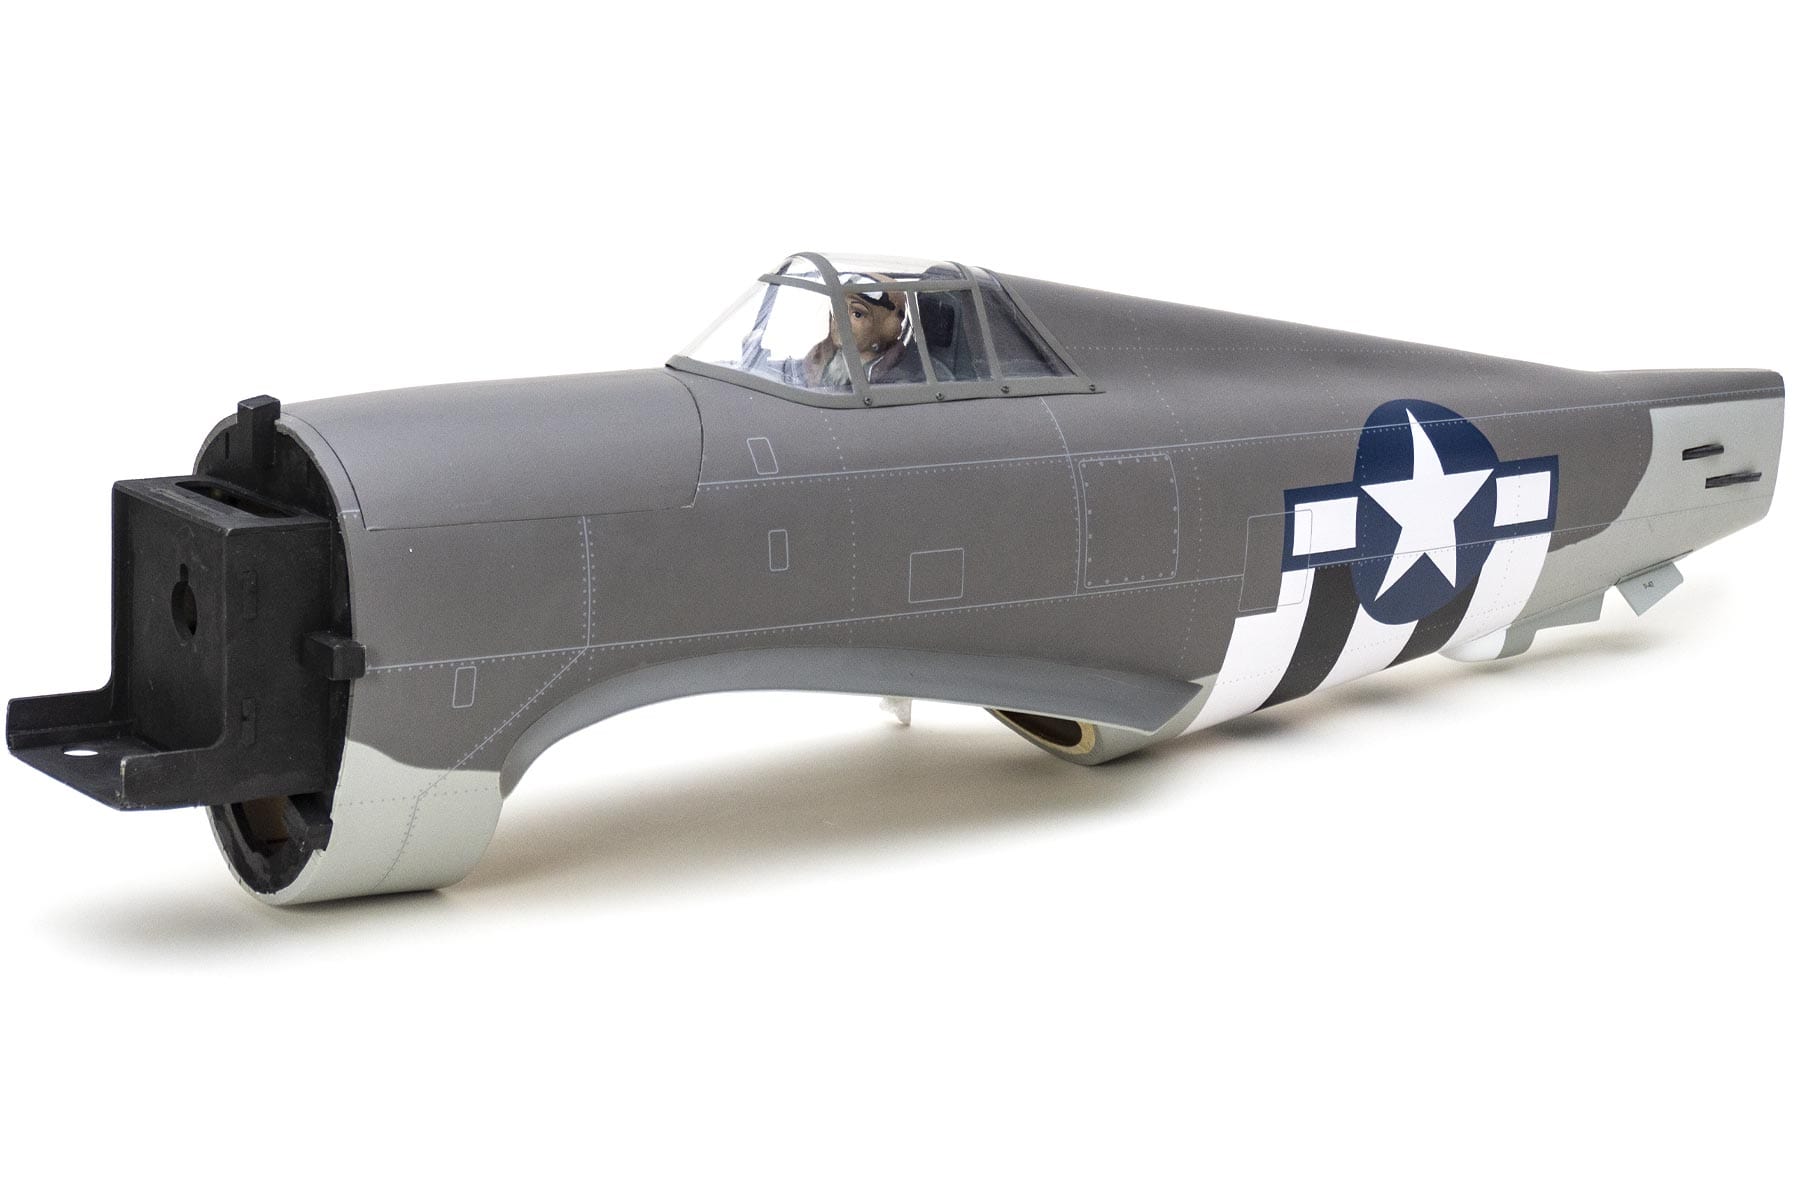 Nexa 1500mm P-47B Thunderbolt 